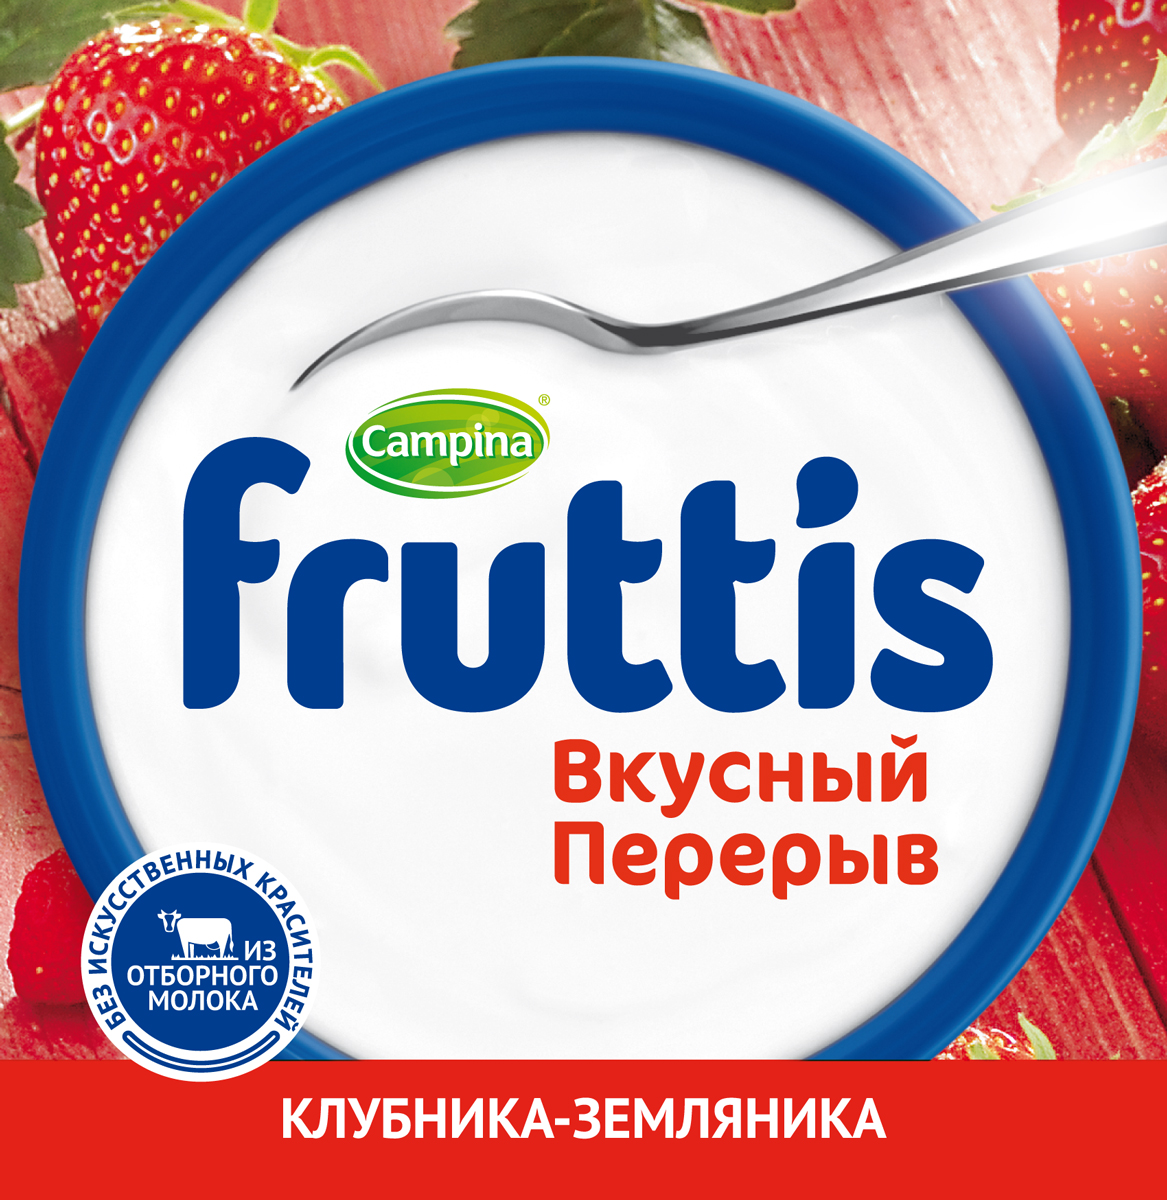 Йогурт Fruttis Вкусный перерыв с топпером 165+15г